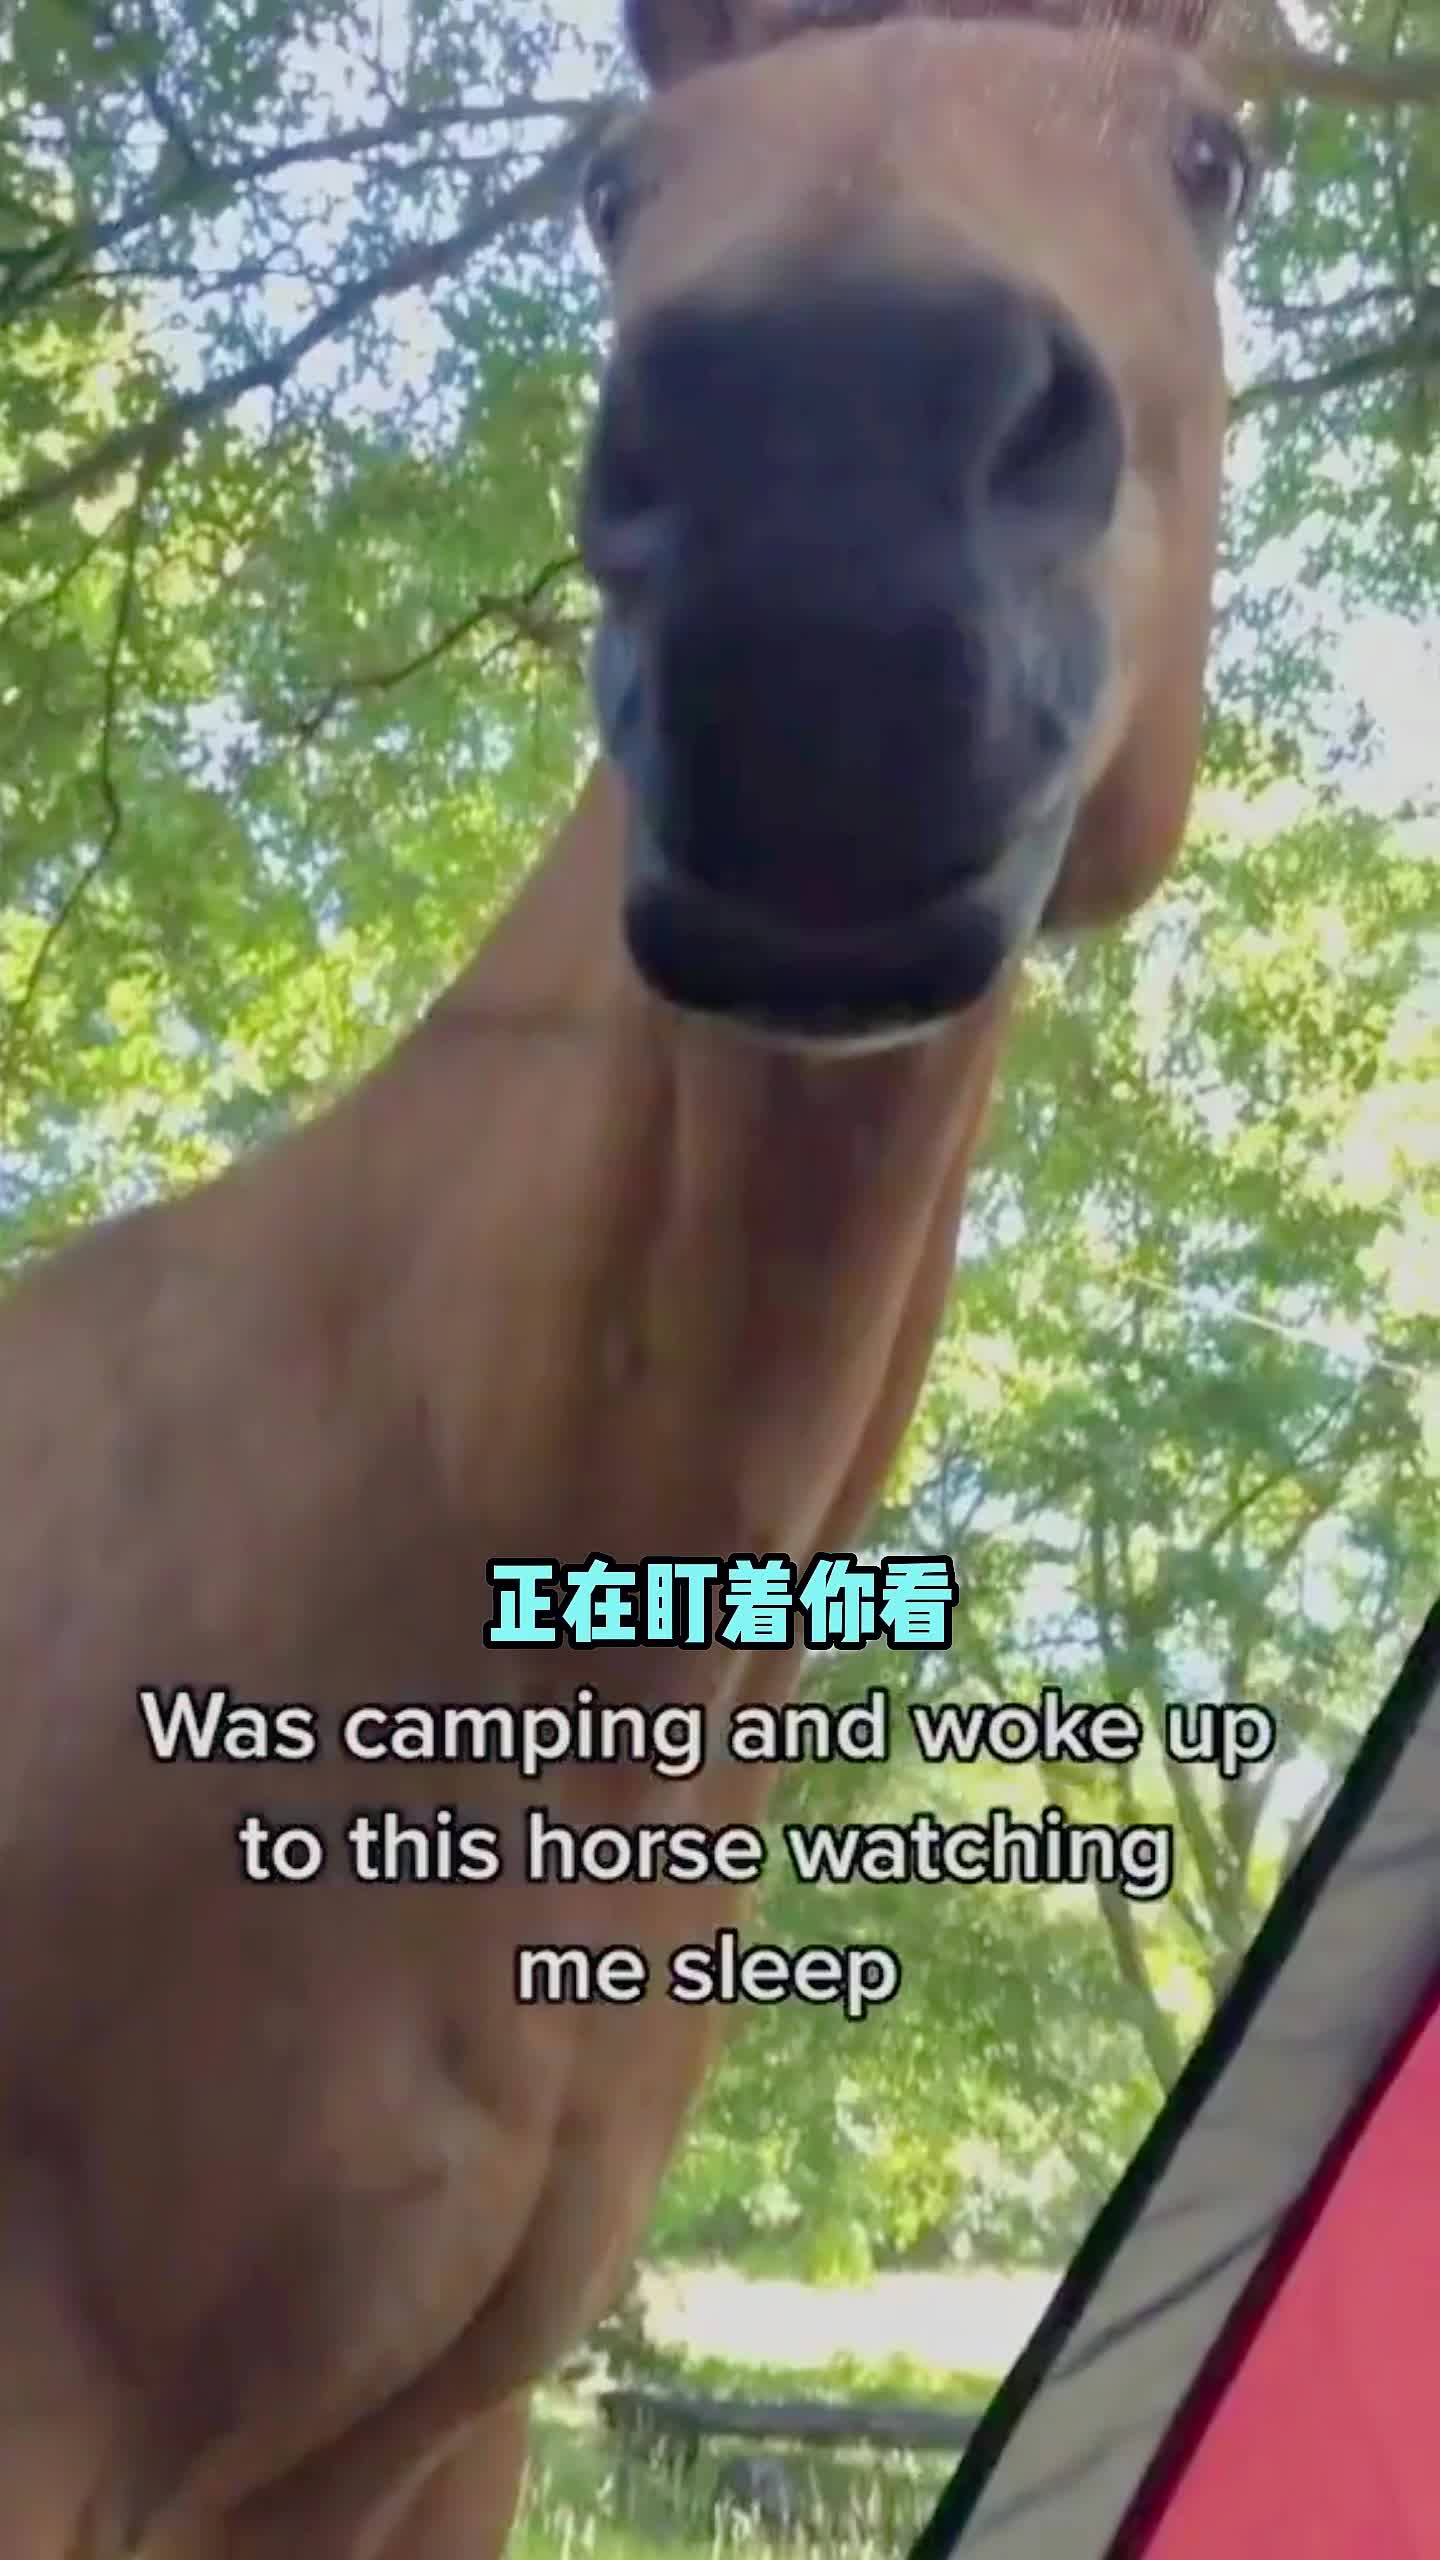 当你露营时睡醒，发现一匹马正在盯着看你